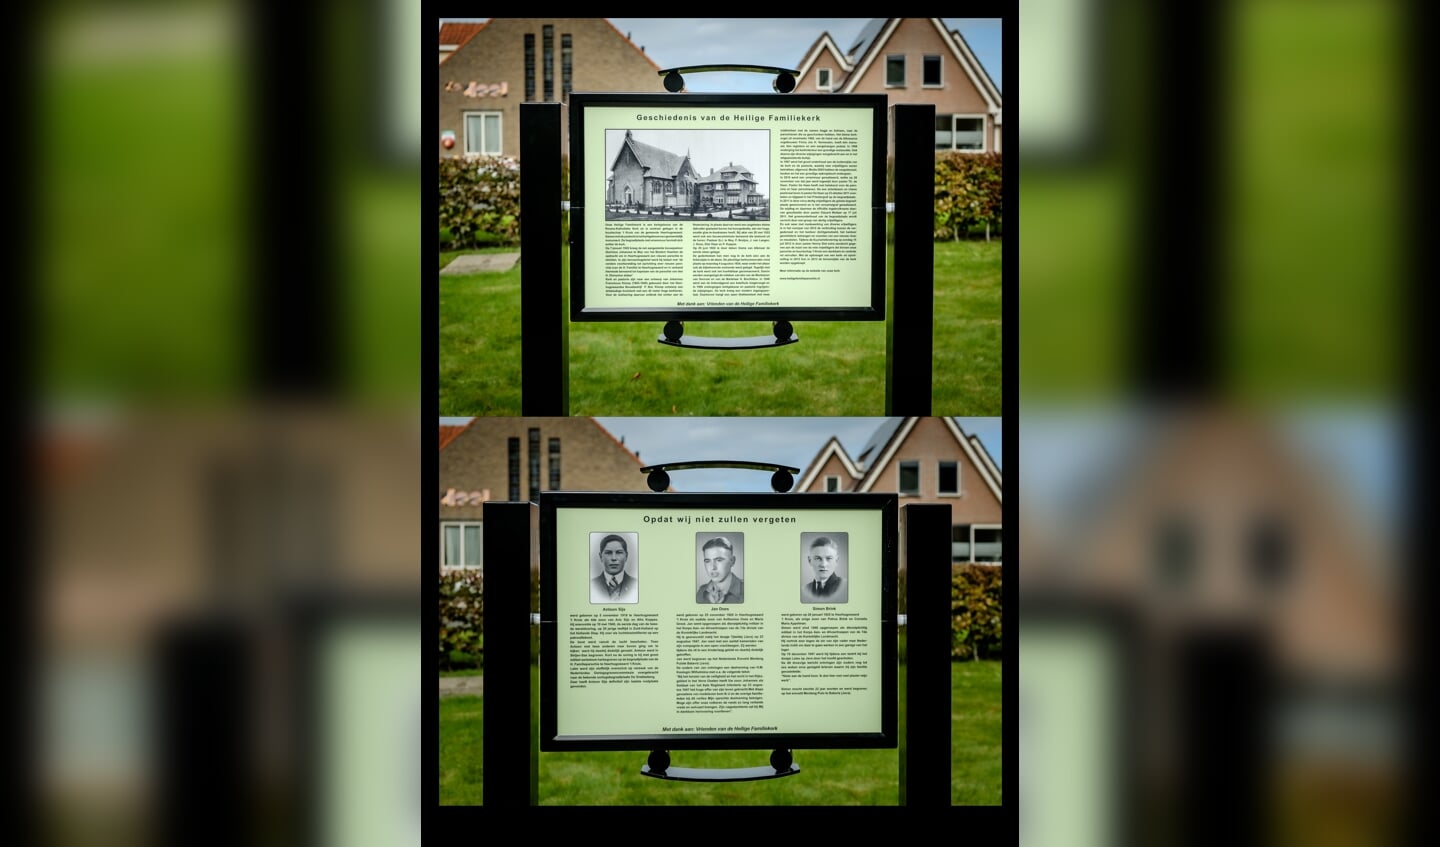 Een collage van het informatiebord, met boven de zijde met de historie van de kerk en onder de zijde waarop de oorlogsslachtoffers geëerd worden.